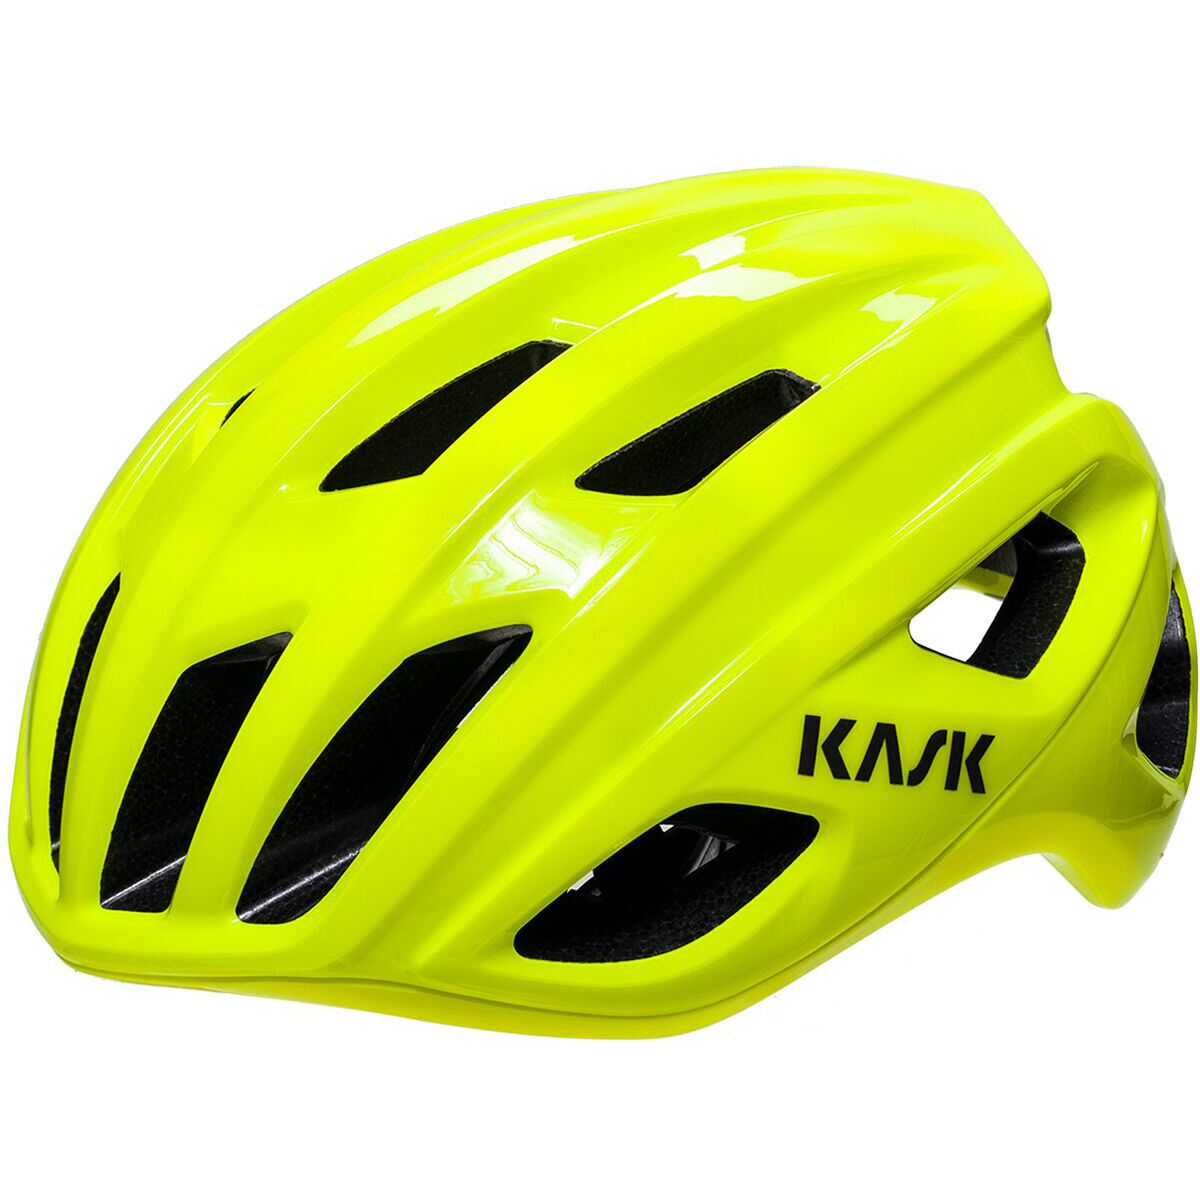 Wonderbaarlijk les diepgaand Kask Road Helmets | Competitive Cyclist